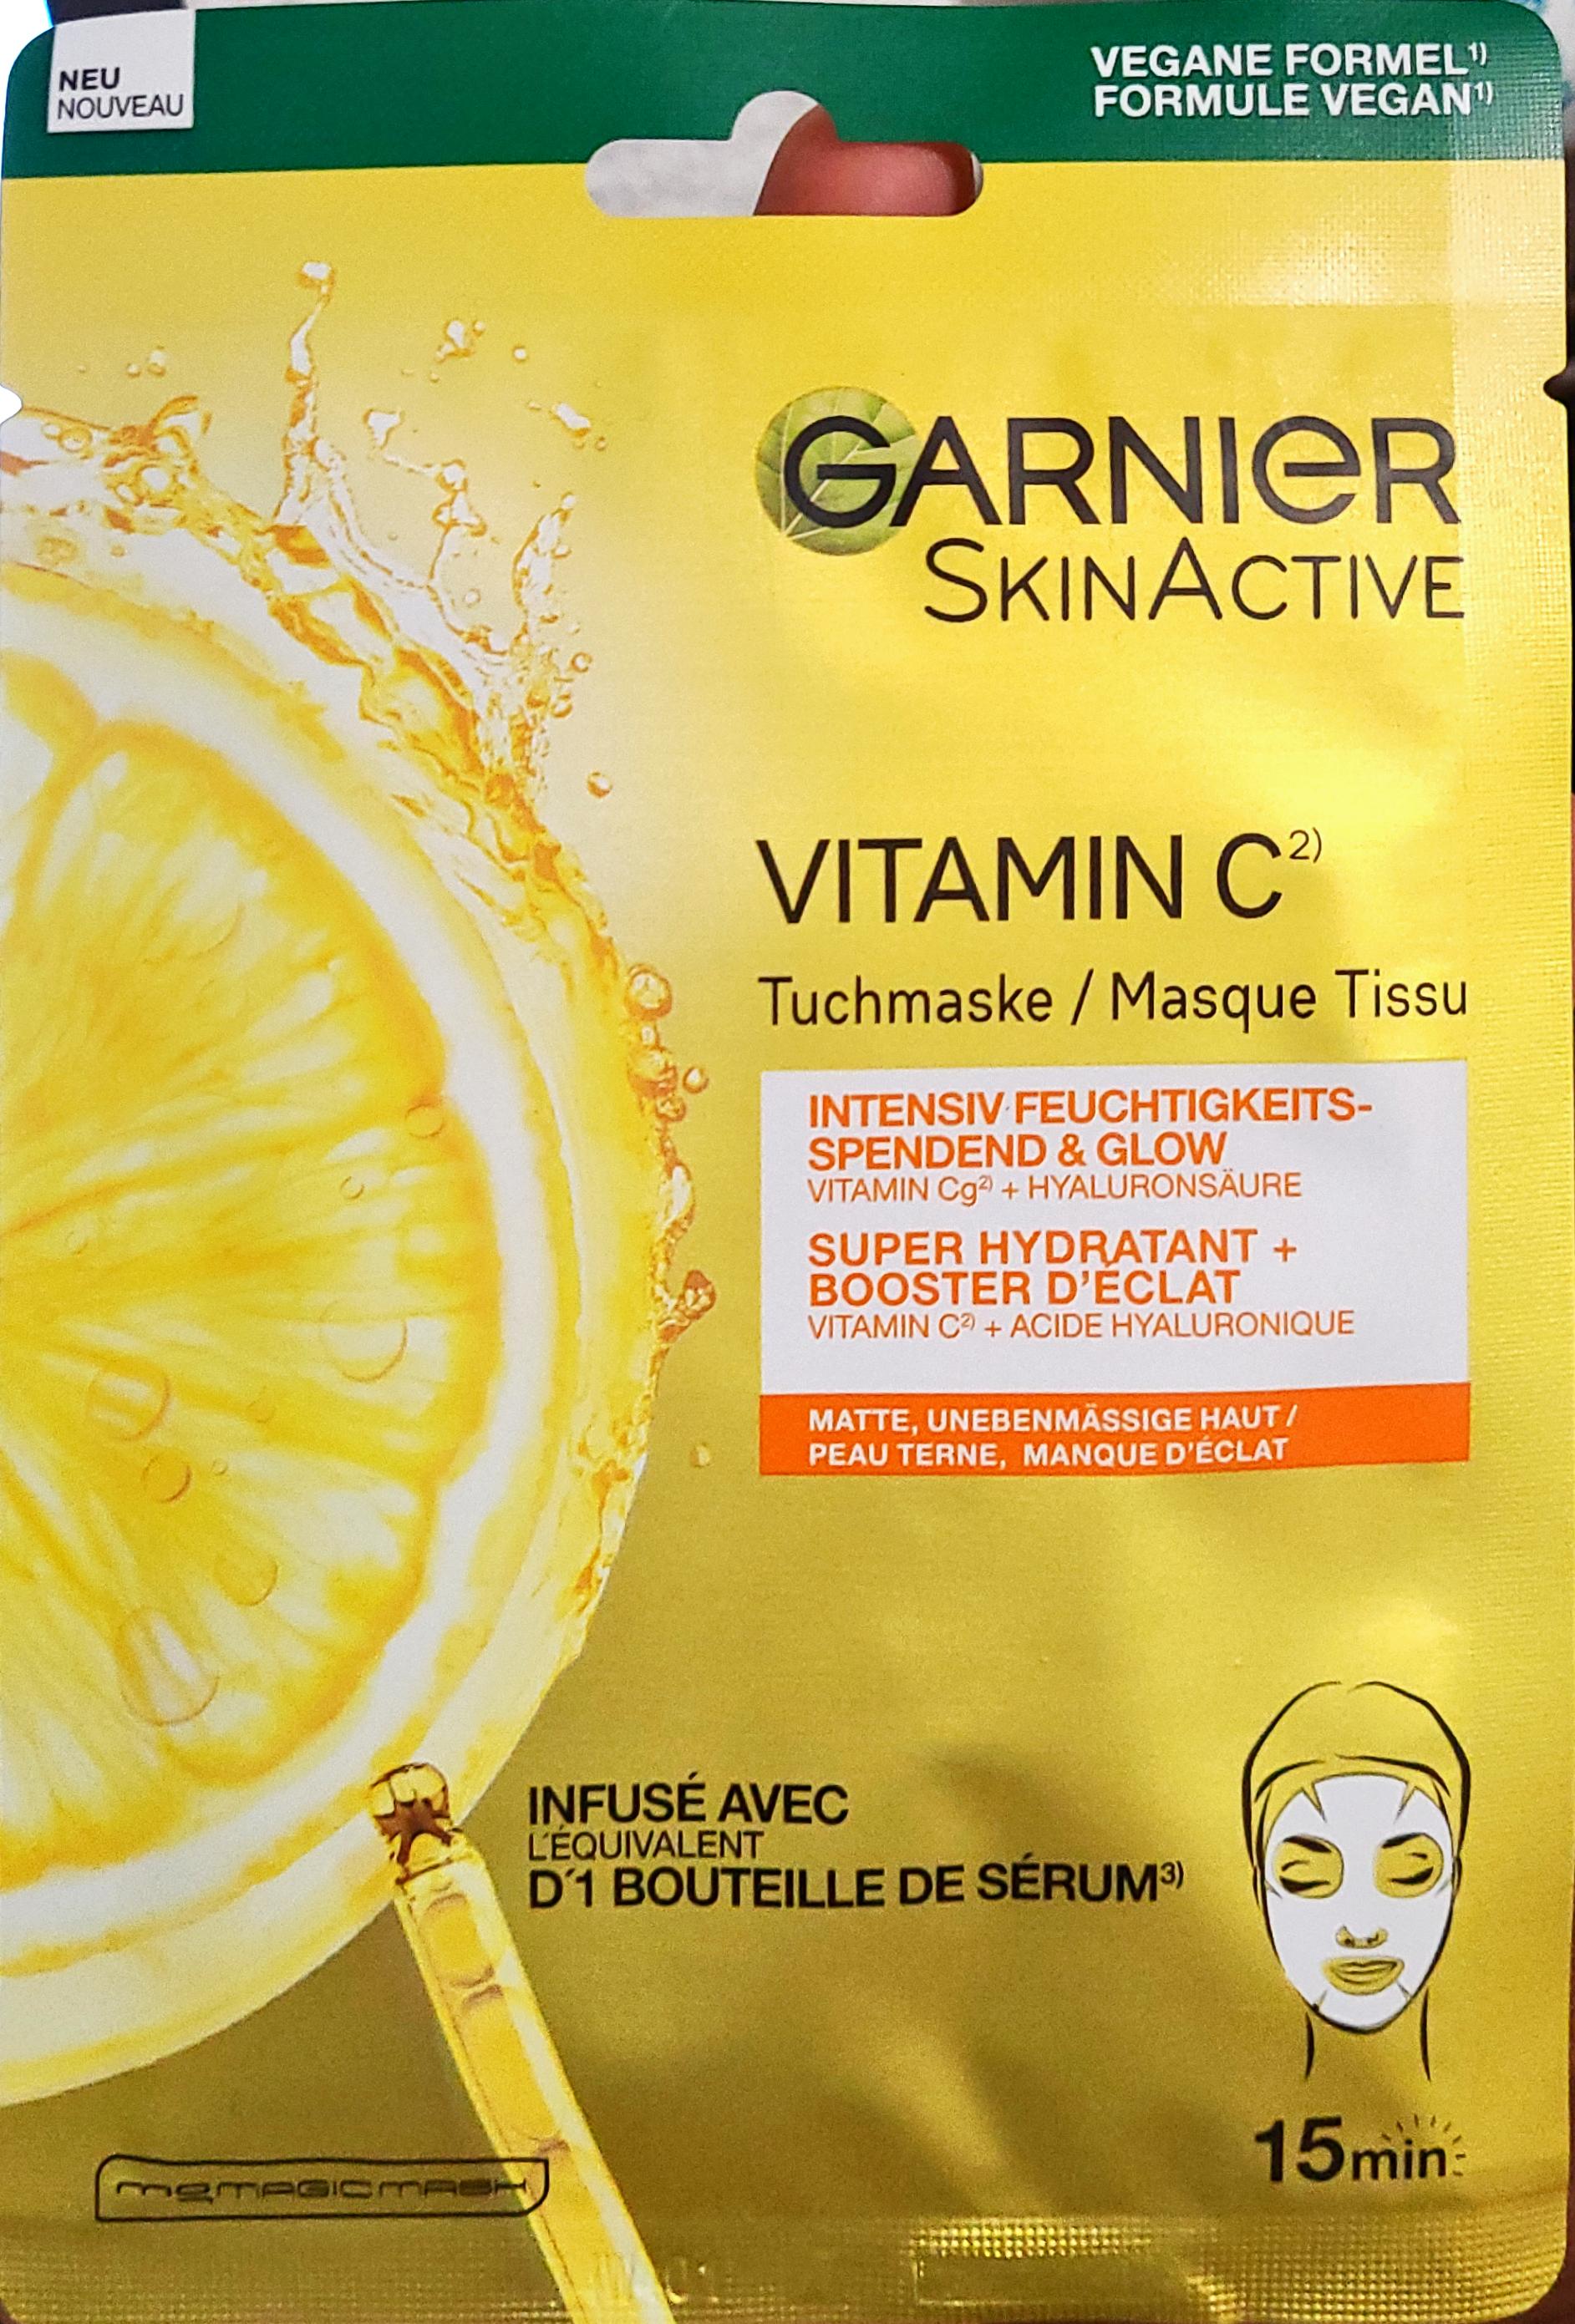 Garnier Skin Active Tuchmaske Vitamin C 1 Stück |  Lebensmittel-Sonderposten.de - Überhangware, top Marken,  Verpackungsschaden, kurz MHD Ware, Sonderposten, Körper- und  Haushaltshygiene